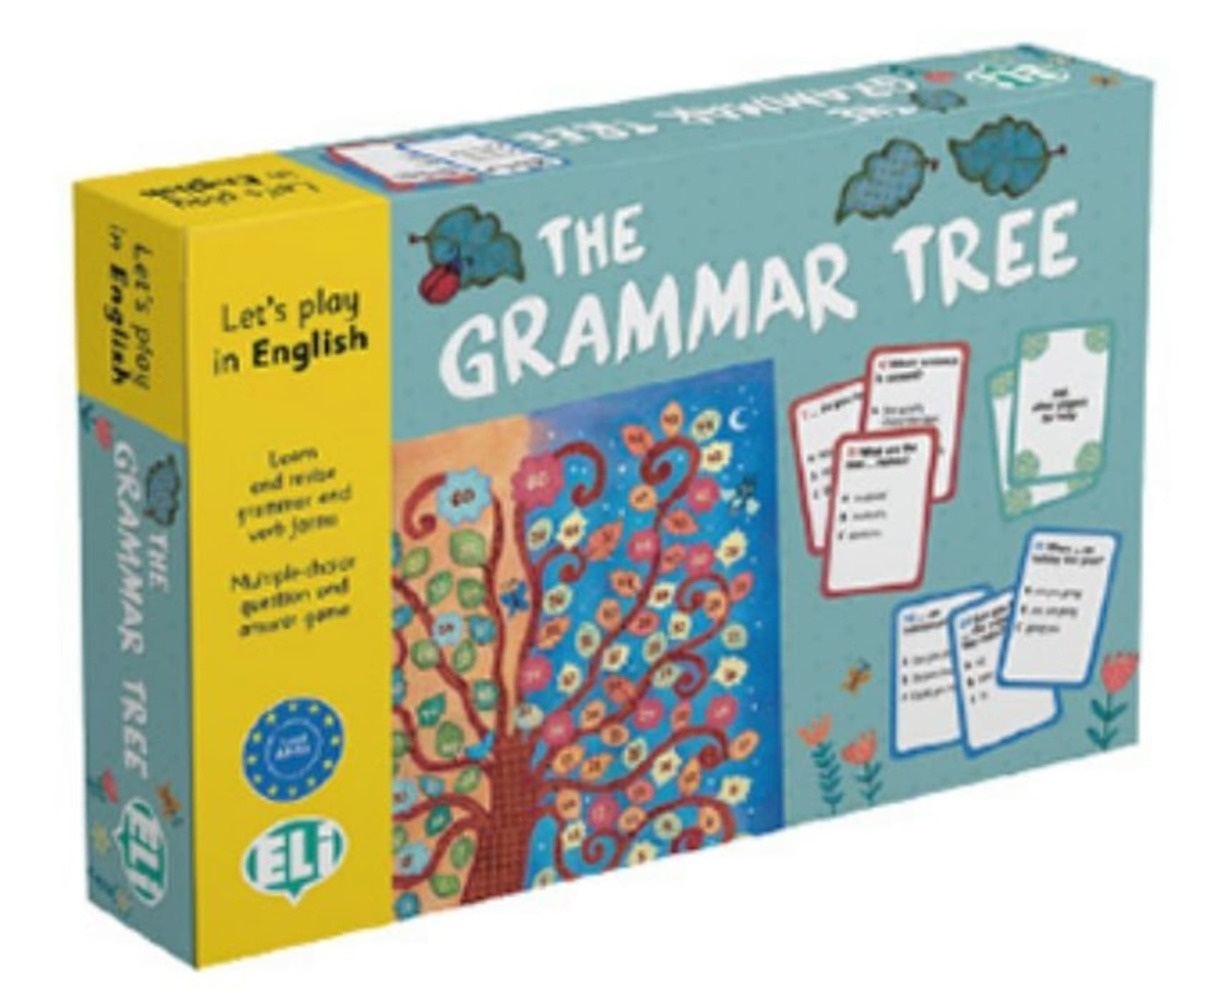 Klett Sprachen - The Grammar Tree